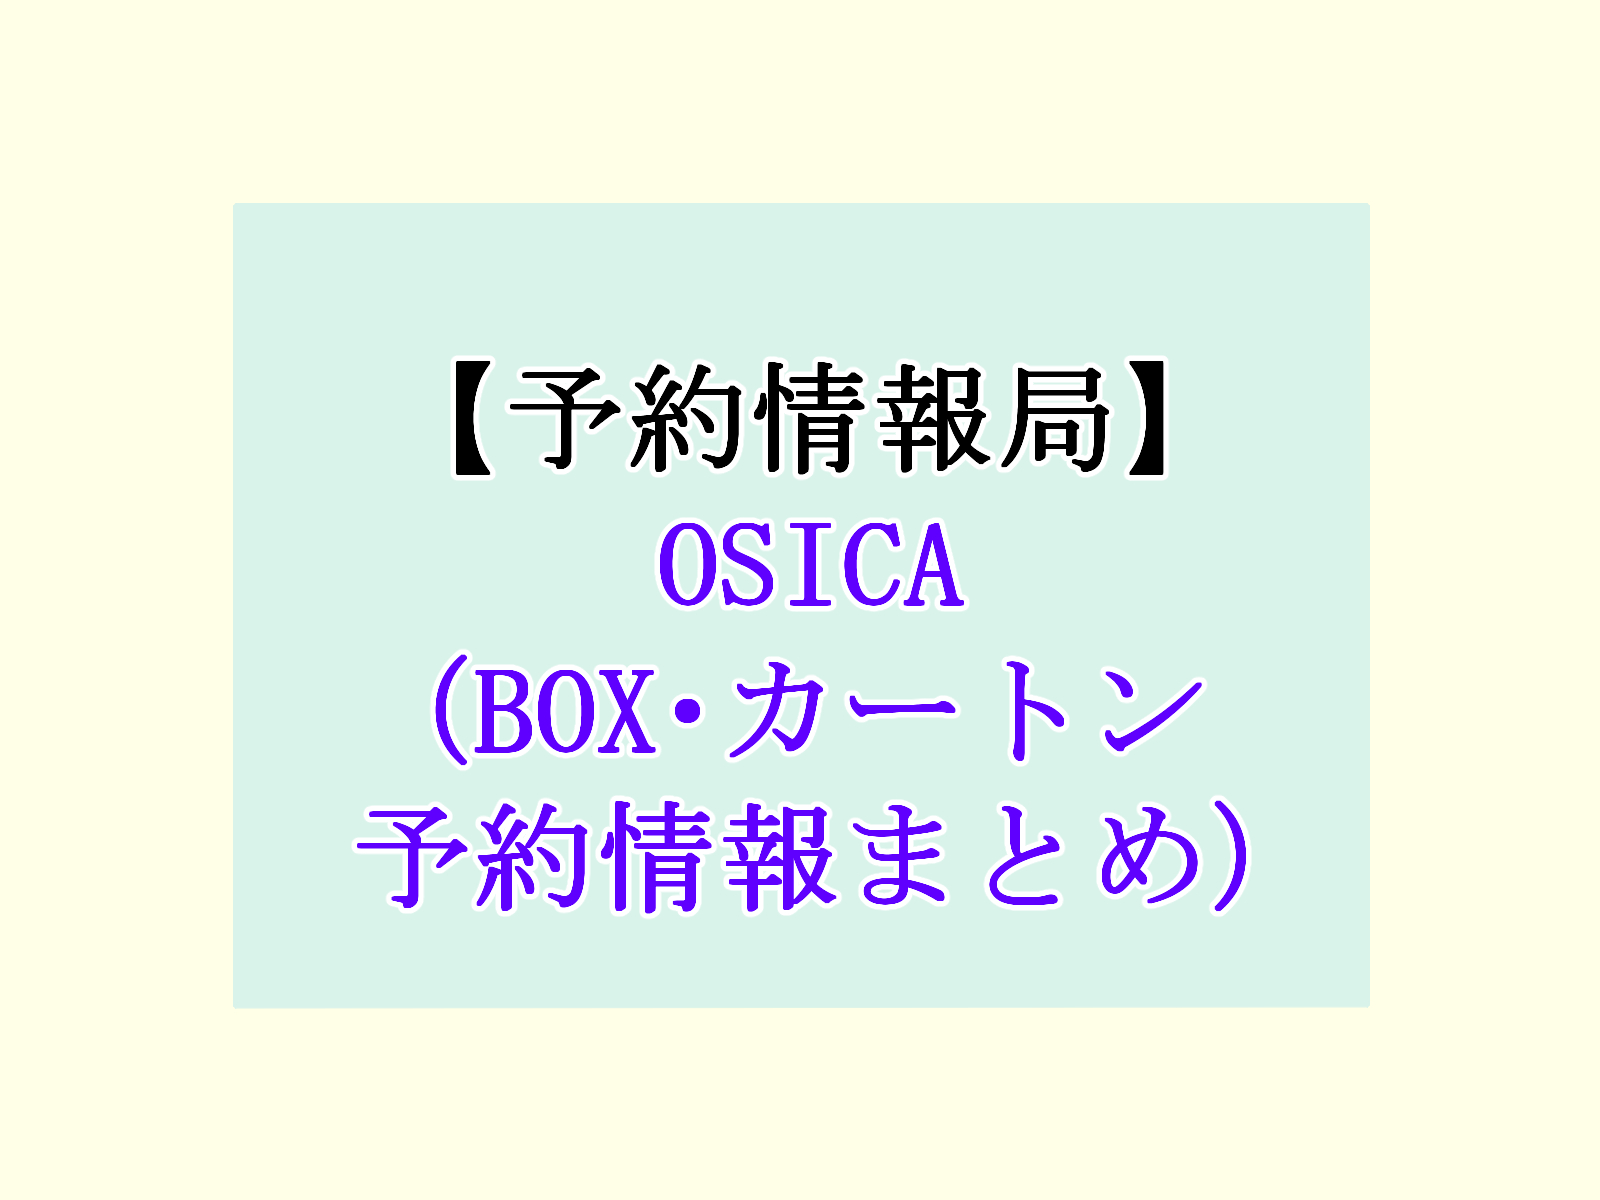 OISCA予約情報まとめのアイキャッチ画像。